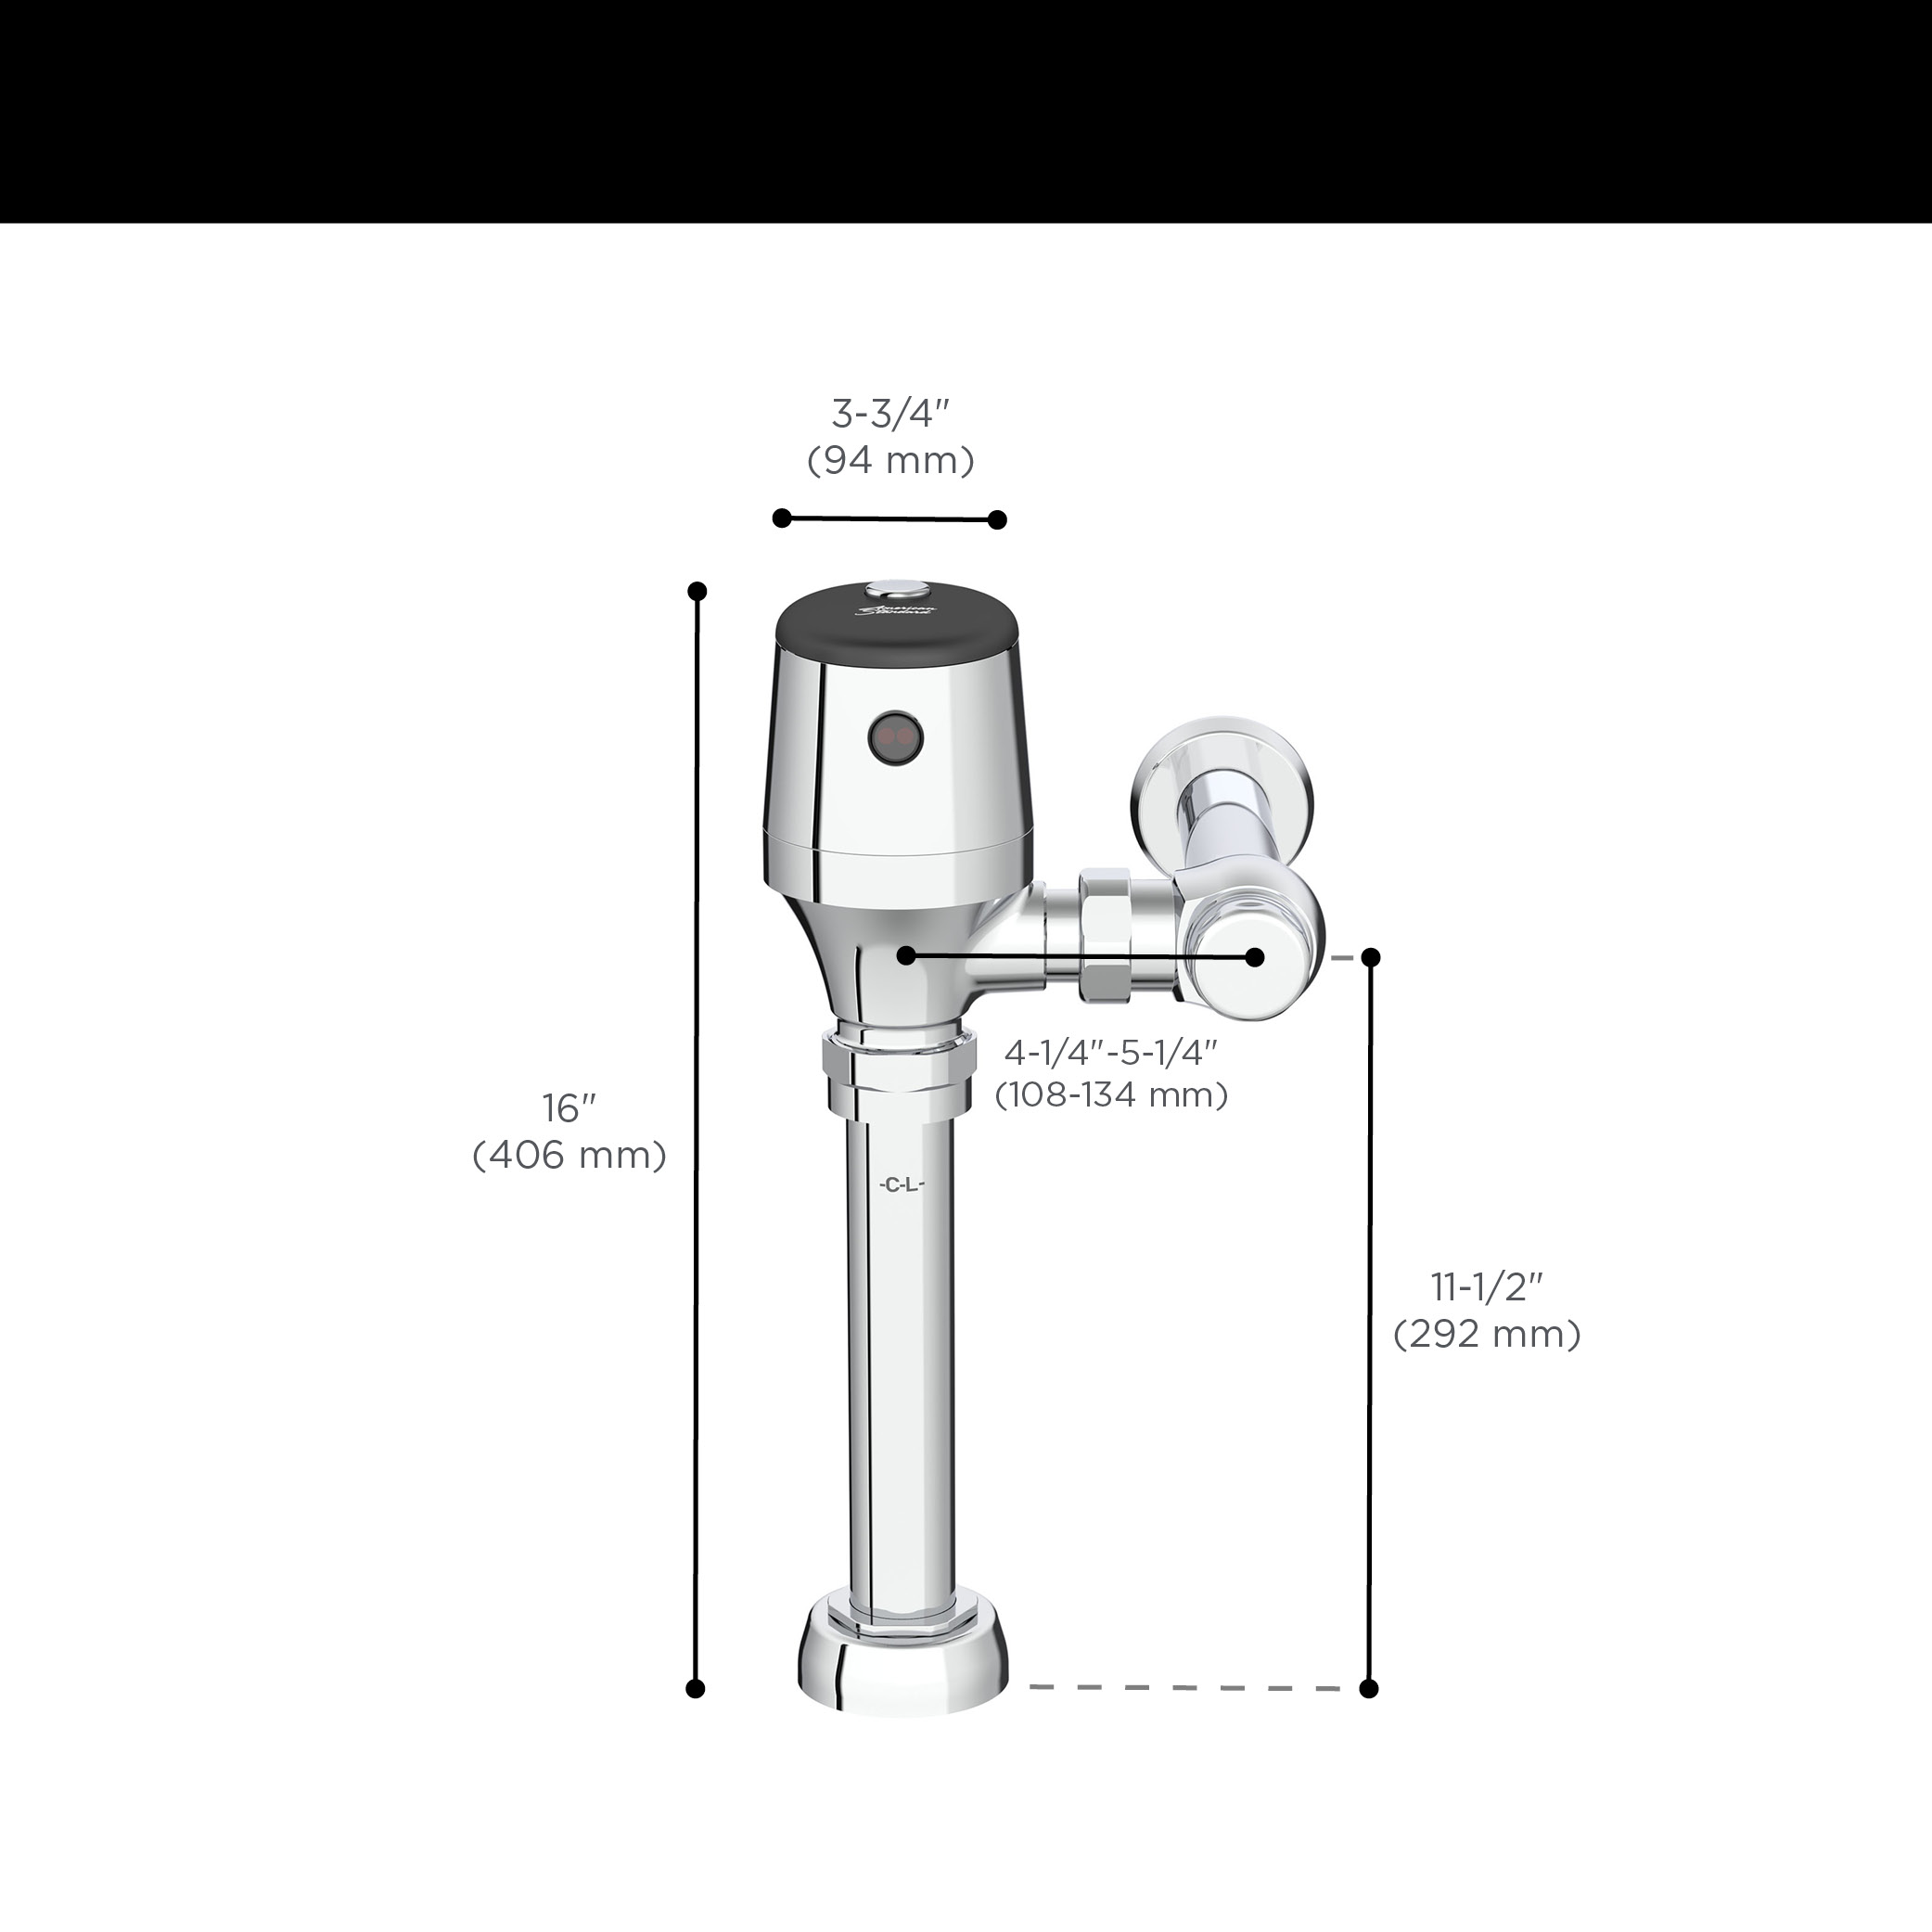 Robinet de chasse d'eau pour toilettes exposées UltimaMC SelectronicMC, à diaphragme, modèle de base,1,1 gpc (4,2 Lpc)